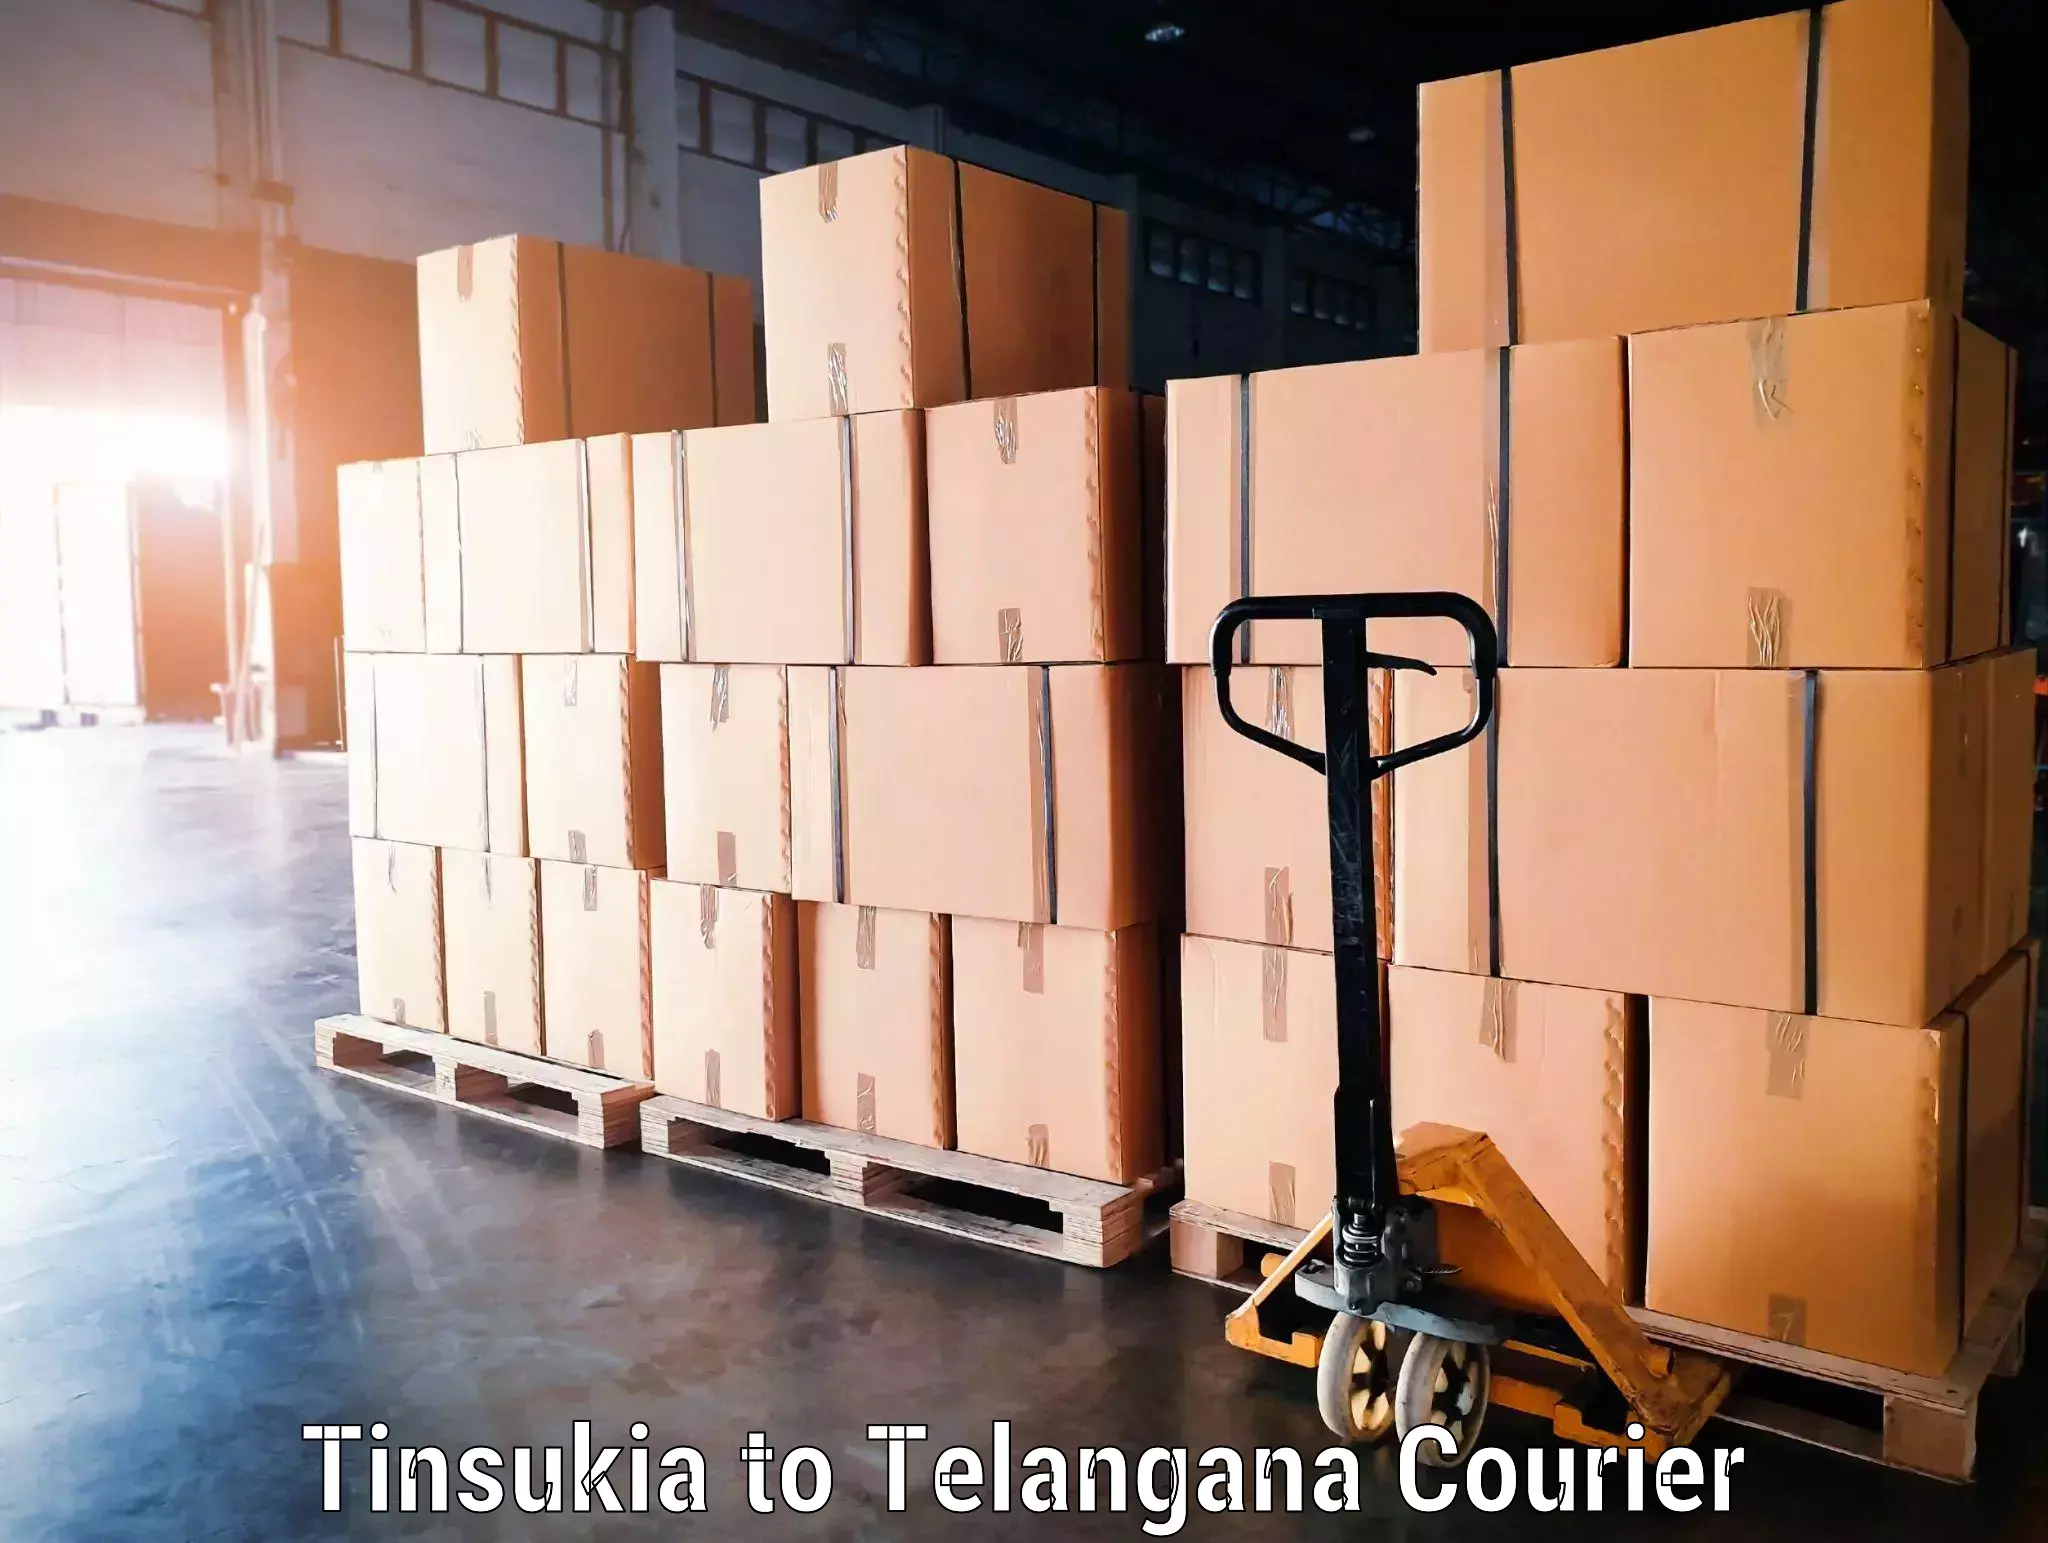 Luggage transport company Tinsukia to Jogulamba Gadwal